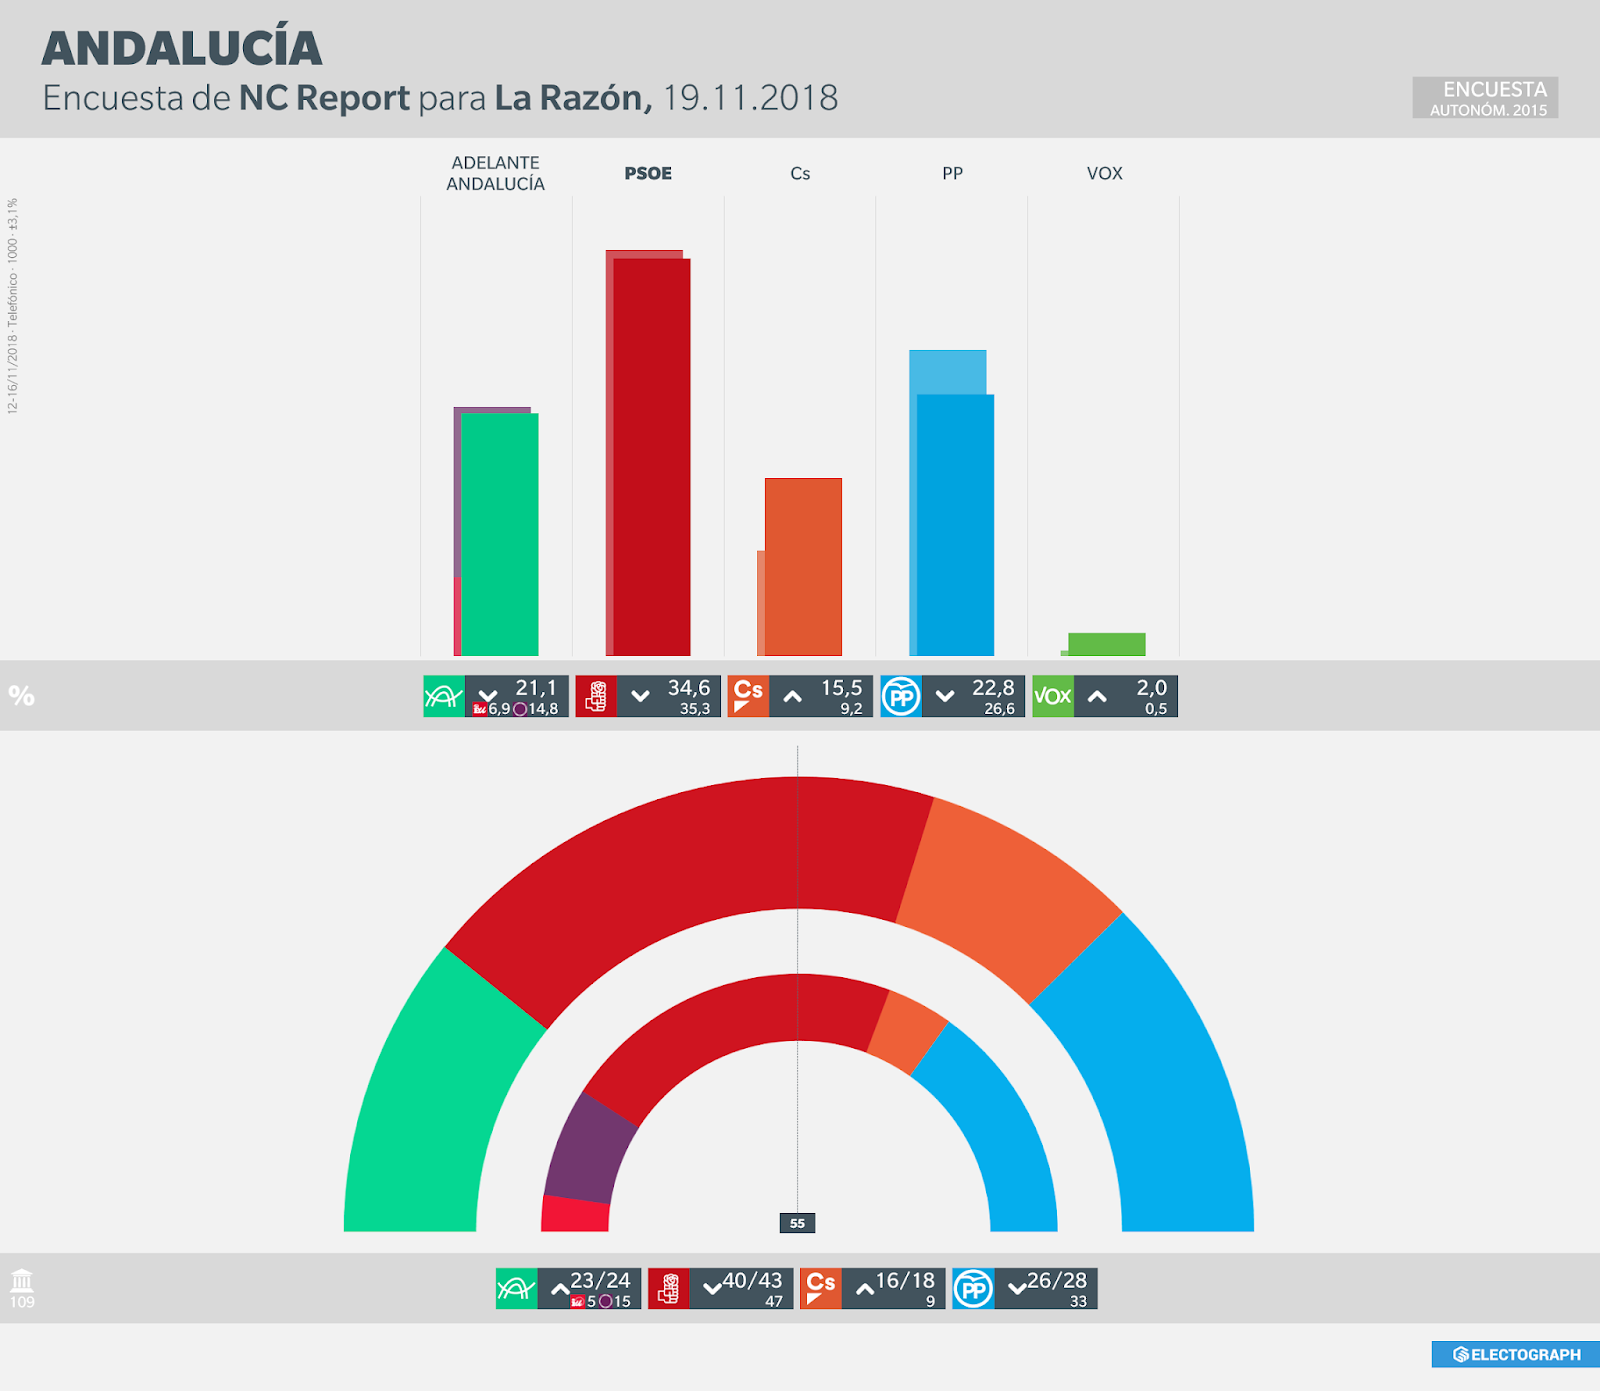 Gráfico de la encuesta para elecciones autonómicas en Andalucía realizada por NC Report para La Razón en noviembre de 2018